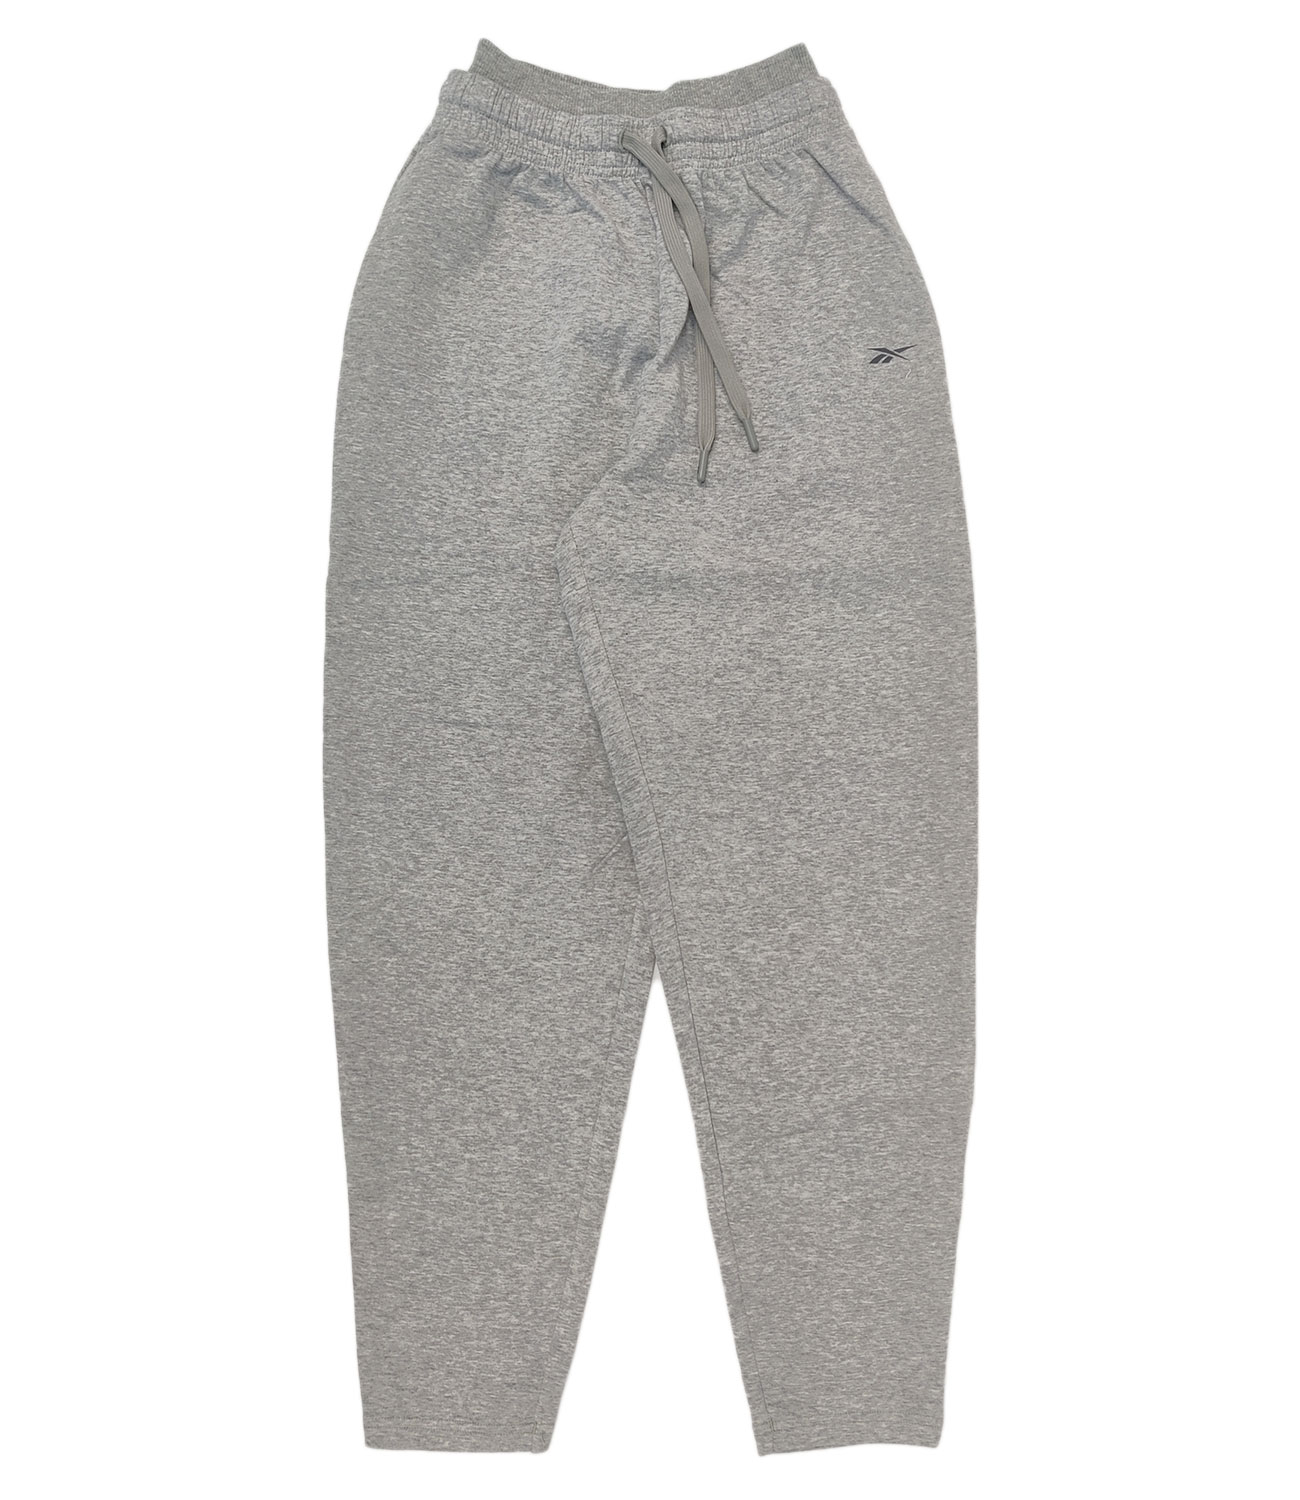 Брюки Reebok Dreamblend Cotton Knit Pant (100037399) купить за 6399 руб. в  интернет-магазине